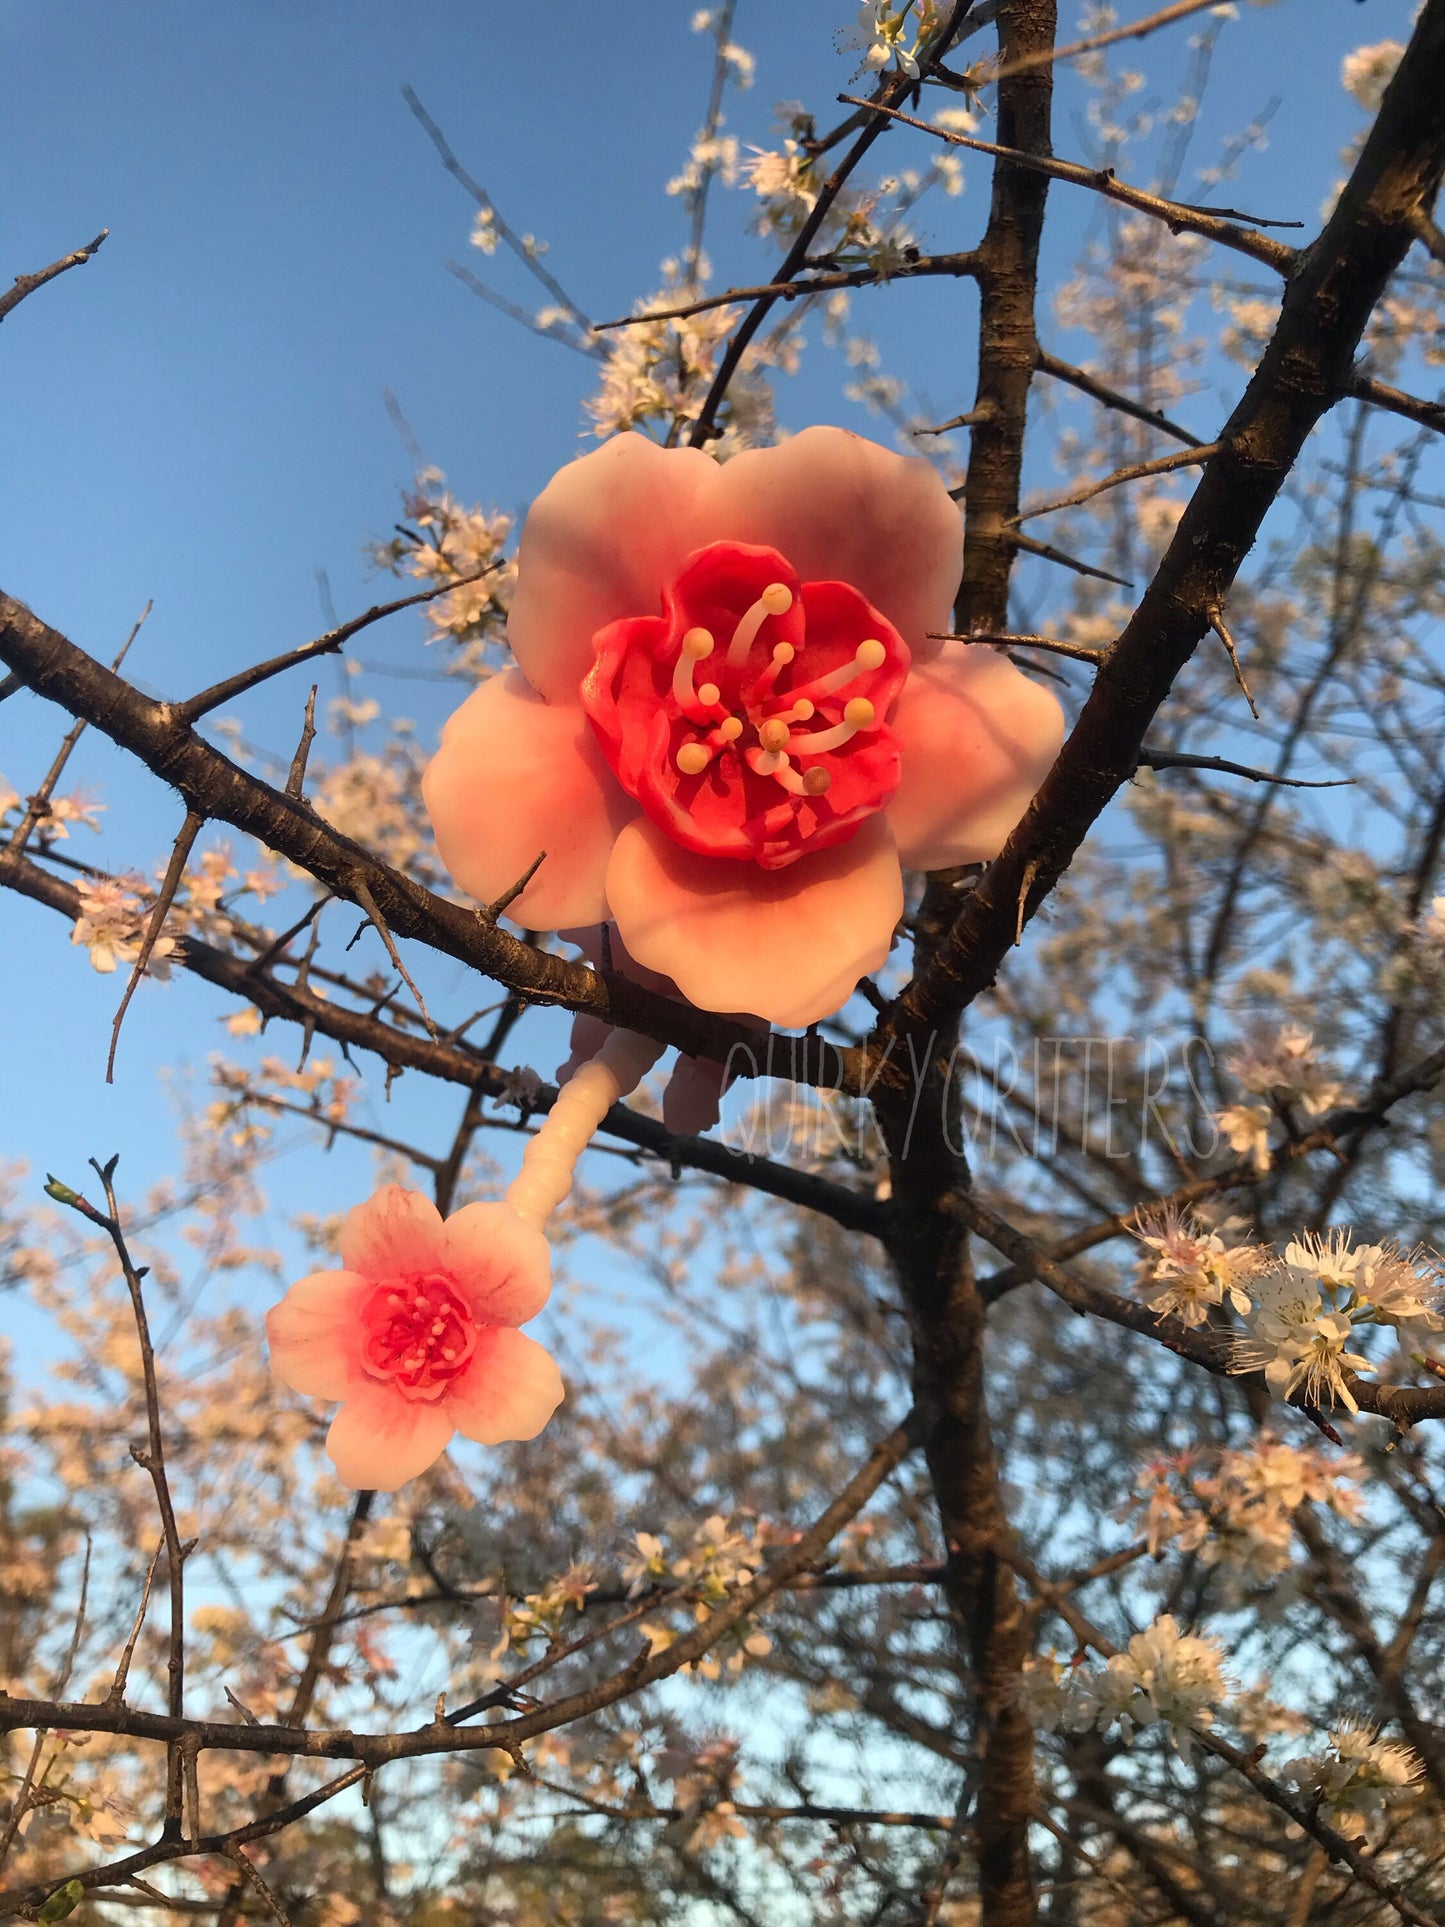 Sakura: The Flower Fairy 3D Resin Printed Ball Joint Doll